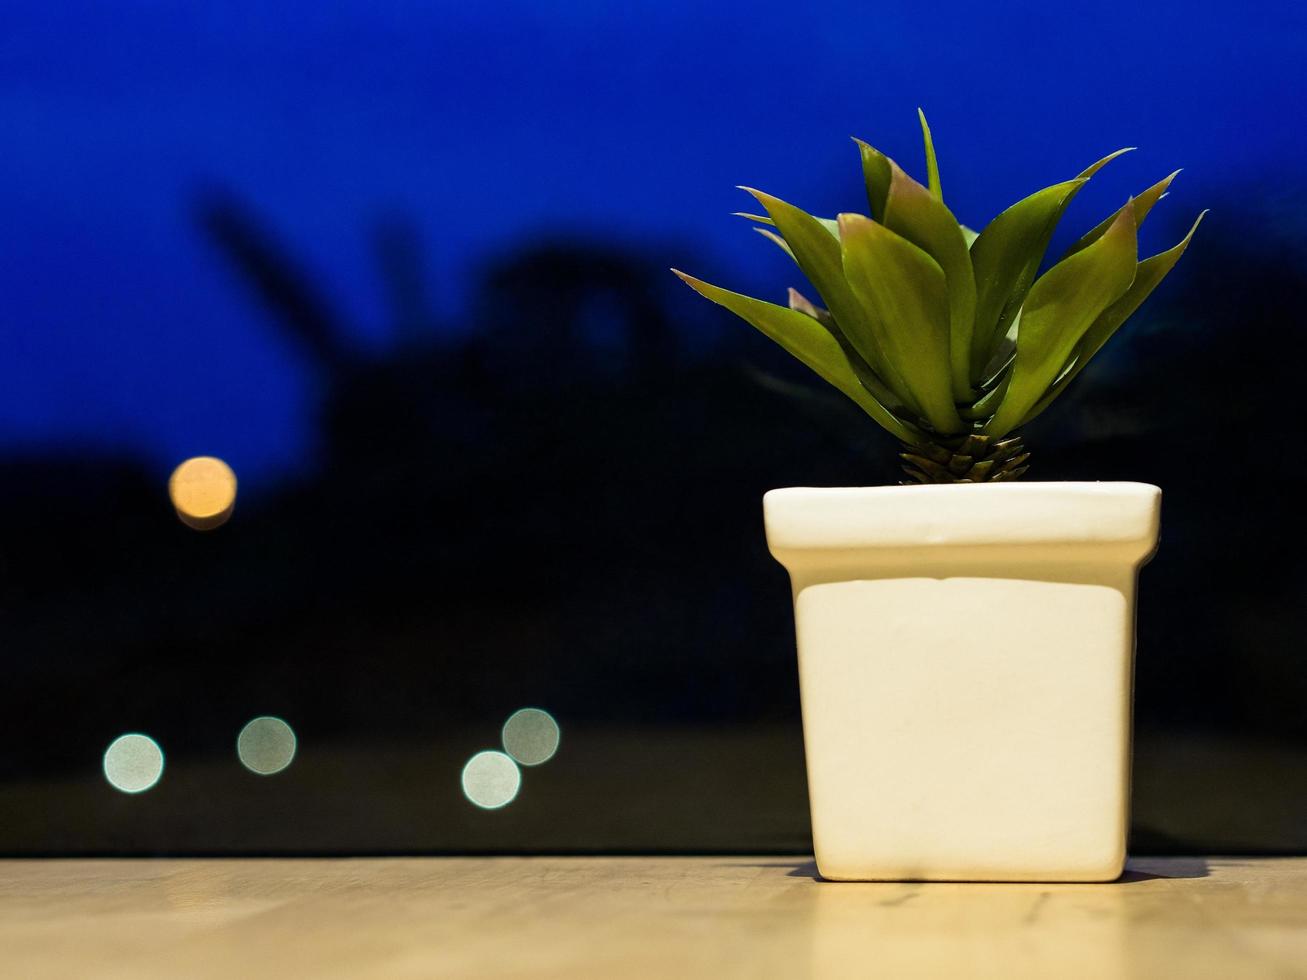 schöner frischer grüner kaktus in einem weißen blumentopf auf einem holztisch, ein romantischer atmosphärenhintergrund foto